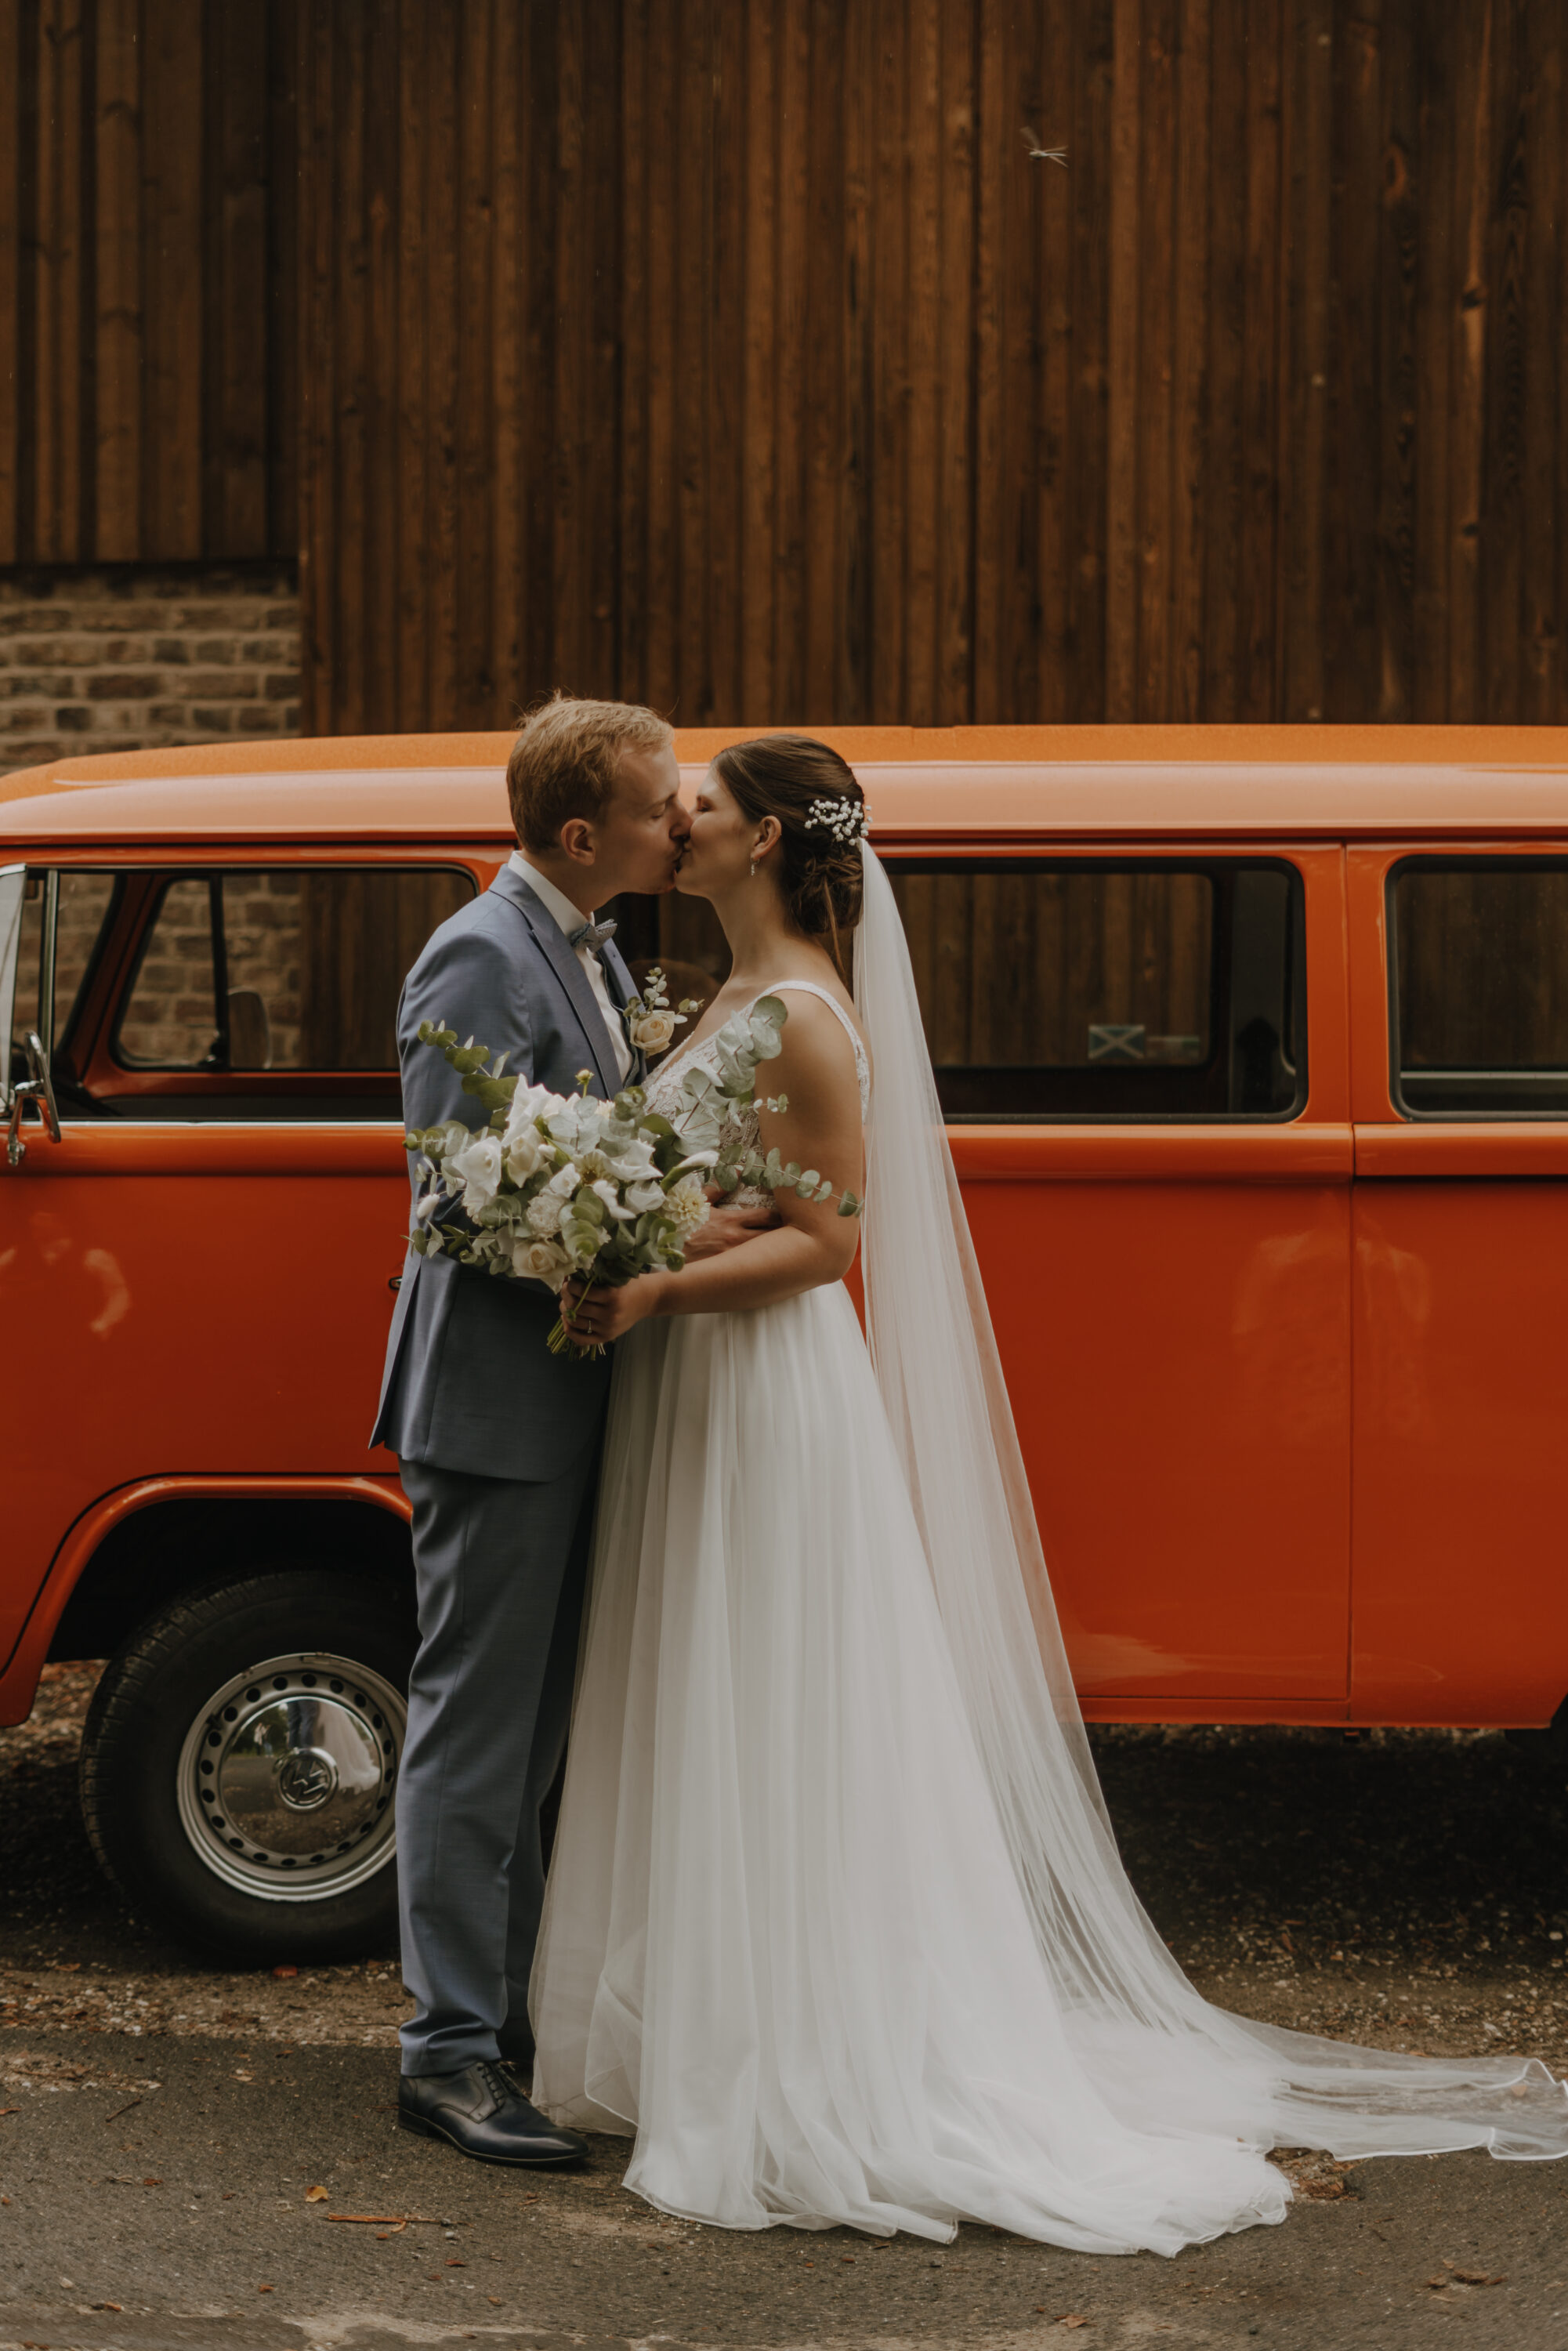 Kuss bei Hochzeitsfotoshooting vor dem Hochzeitsauto 